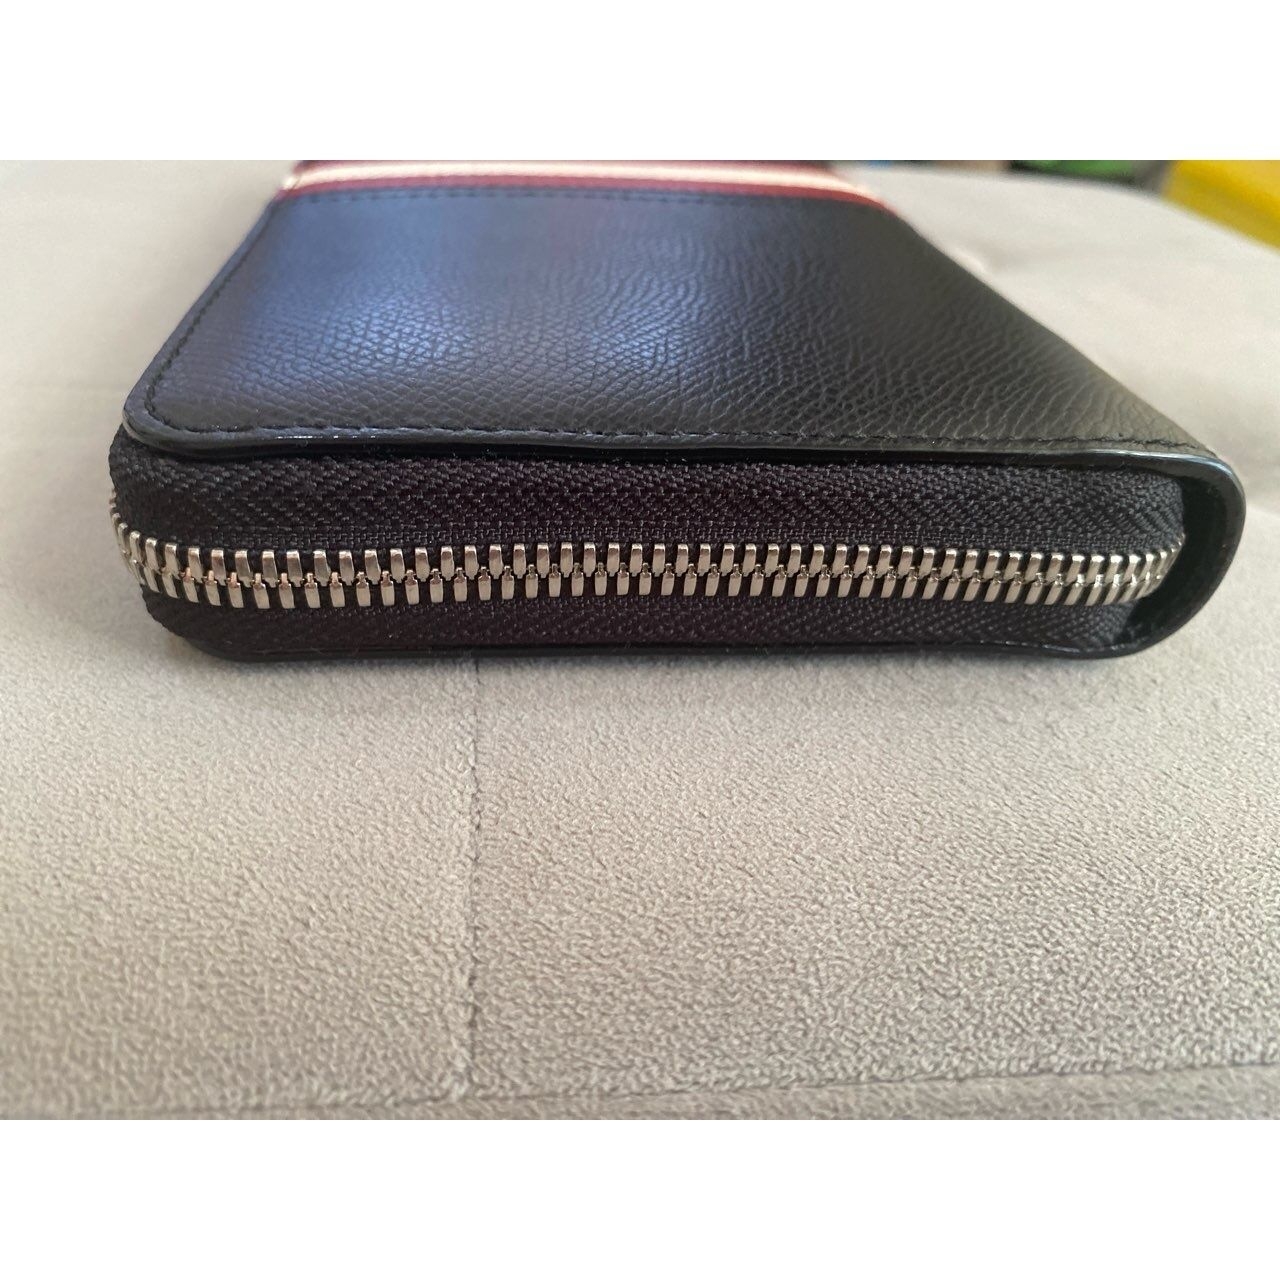 Bally One Zipper Travel Wallet